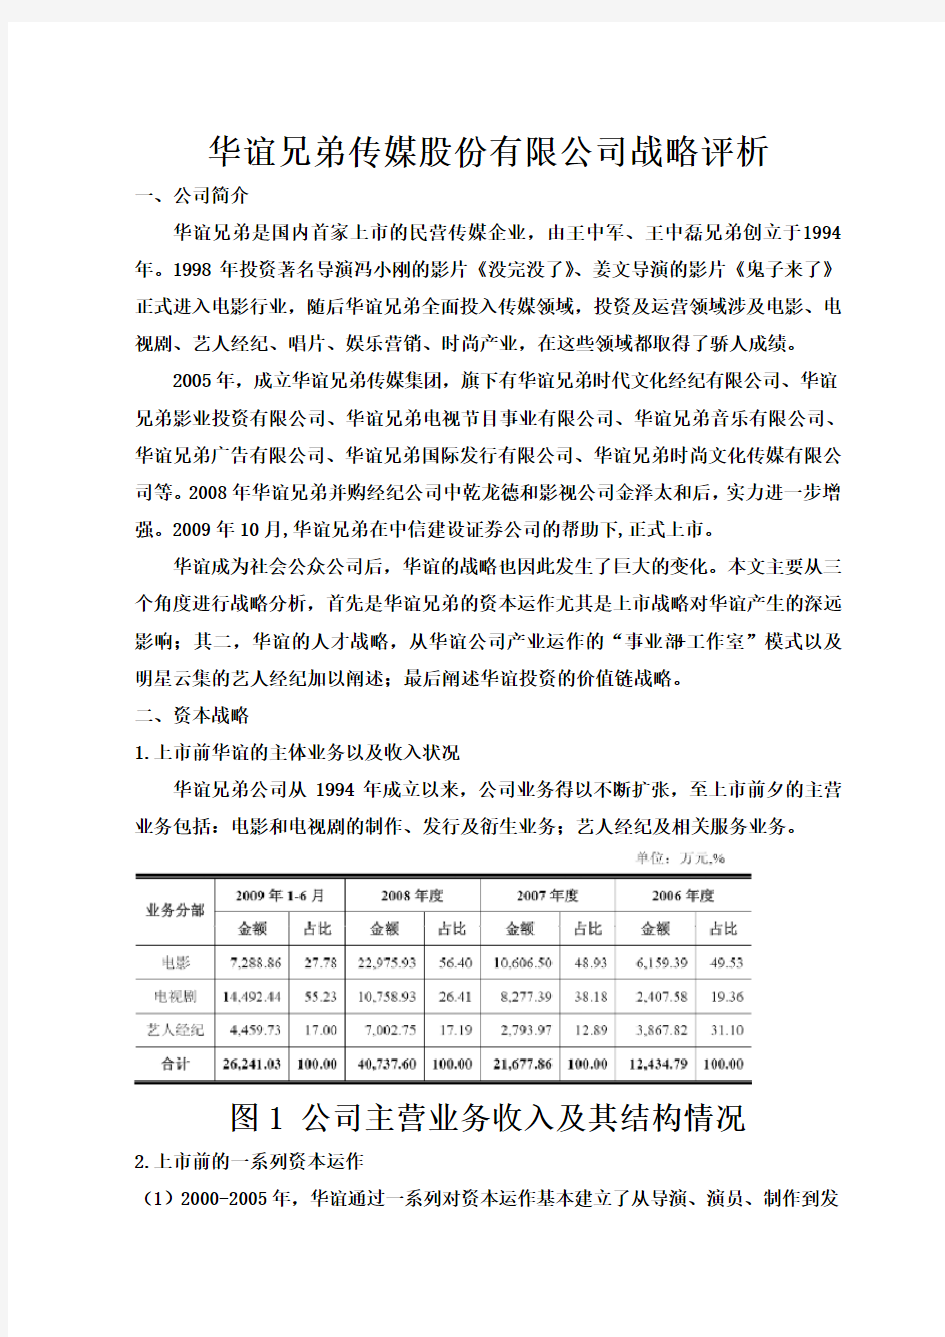 华谊兄弟传媒股份有限公司战略分析